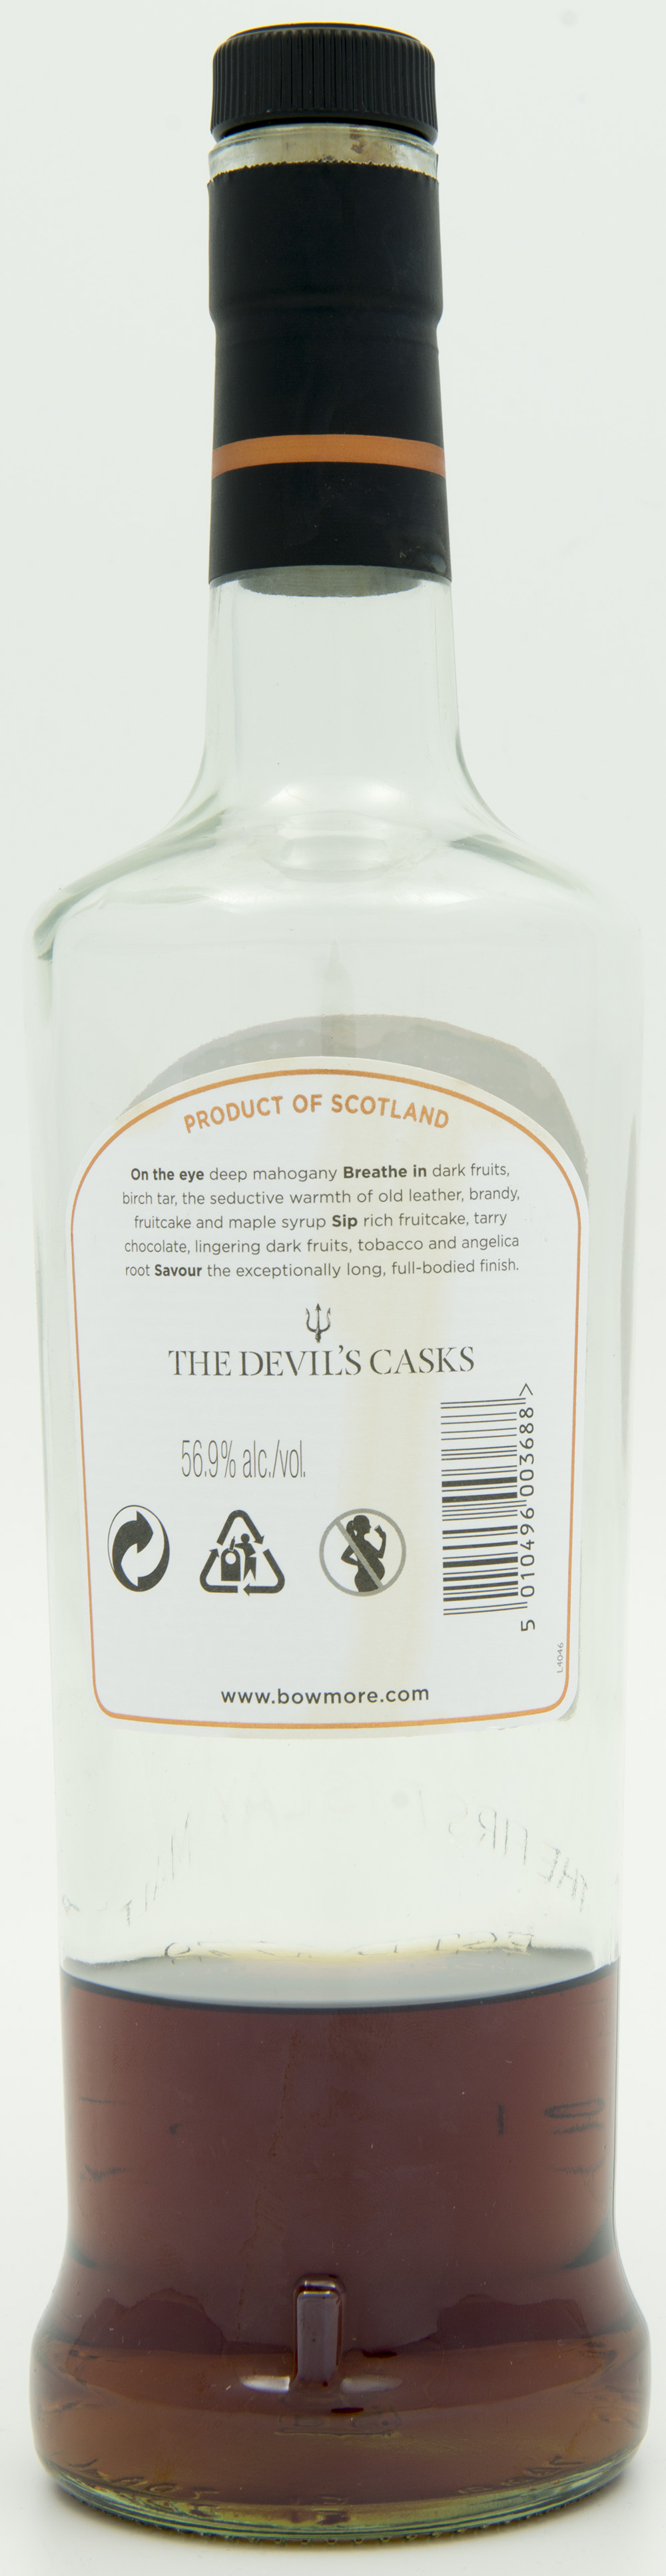 Billede: DSC_4771 - Bowmore Devils Cask - bottle back.jpg